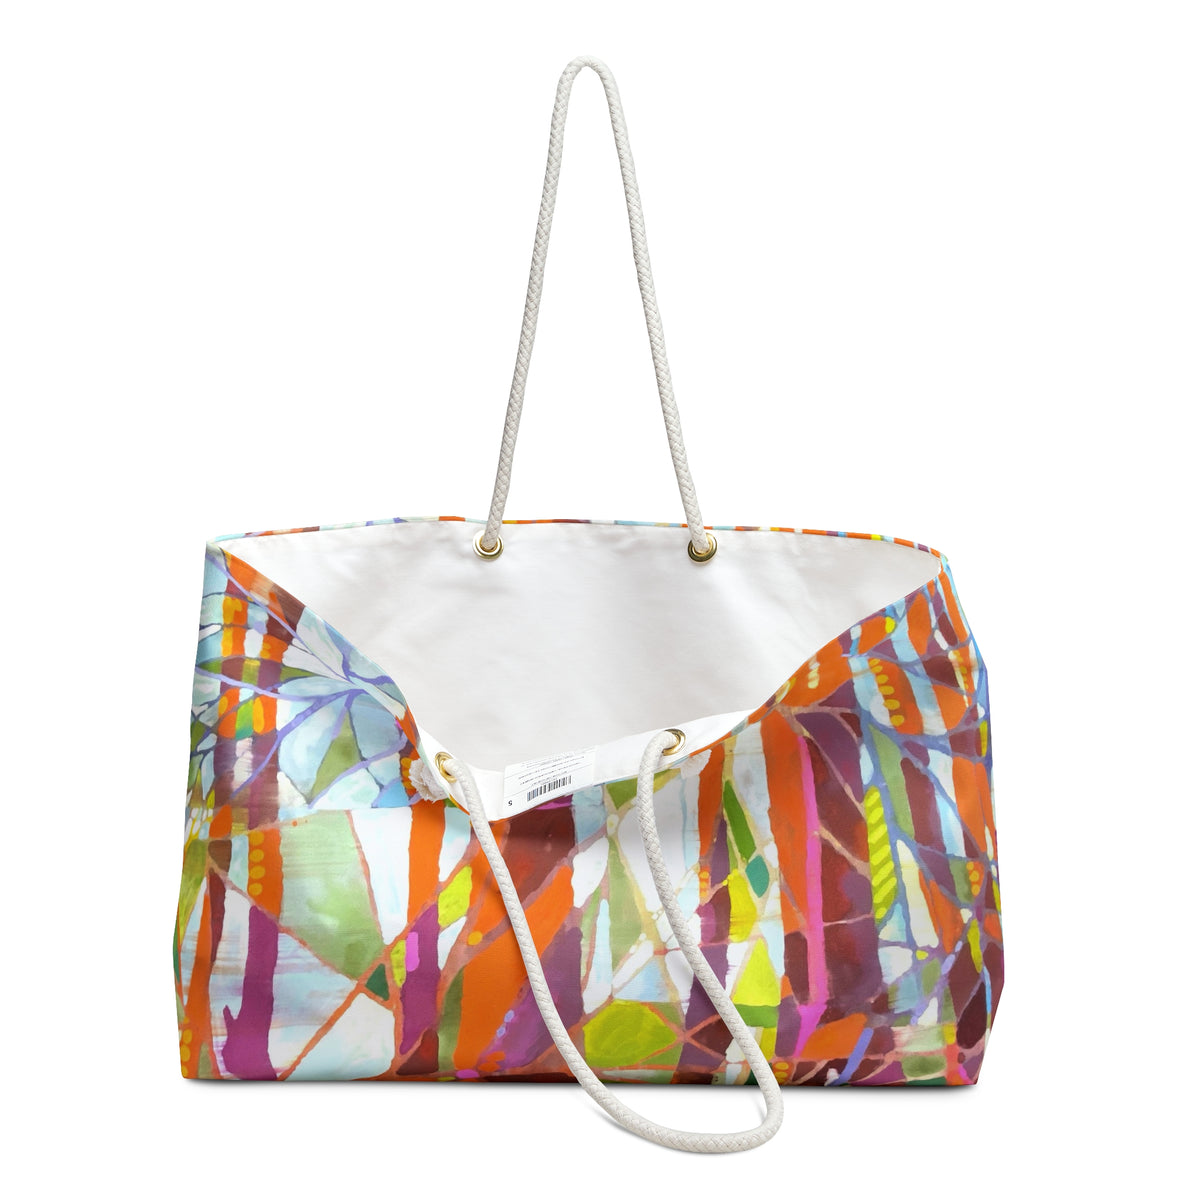 The Colorful Weekender Bag